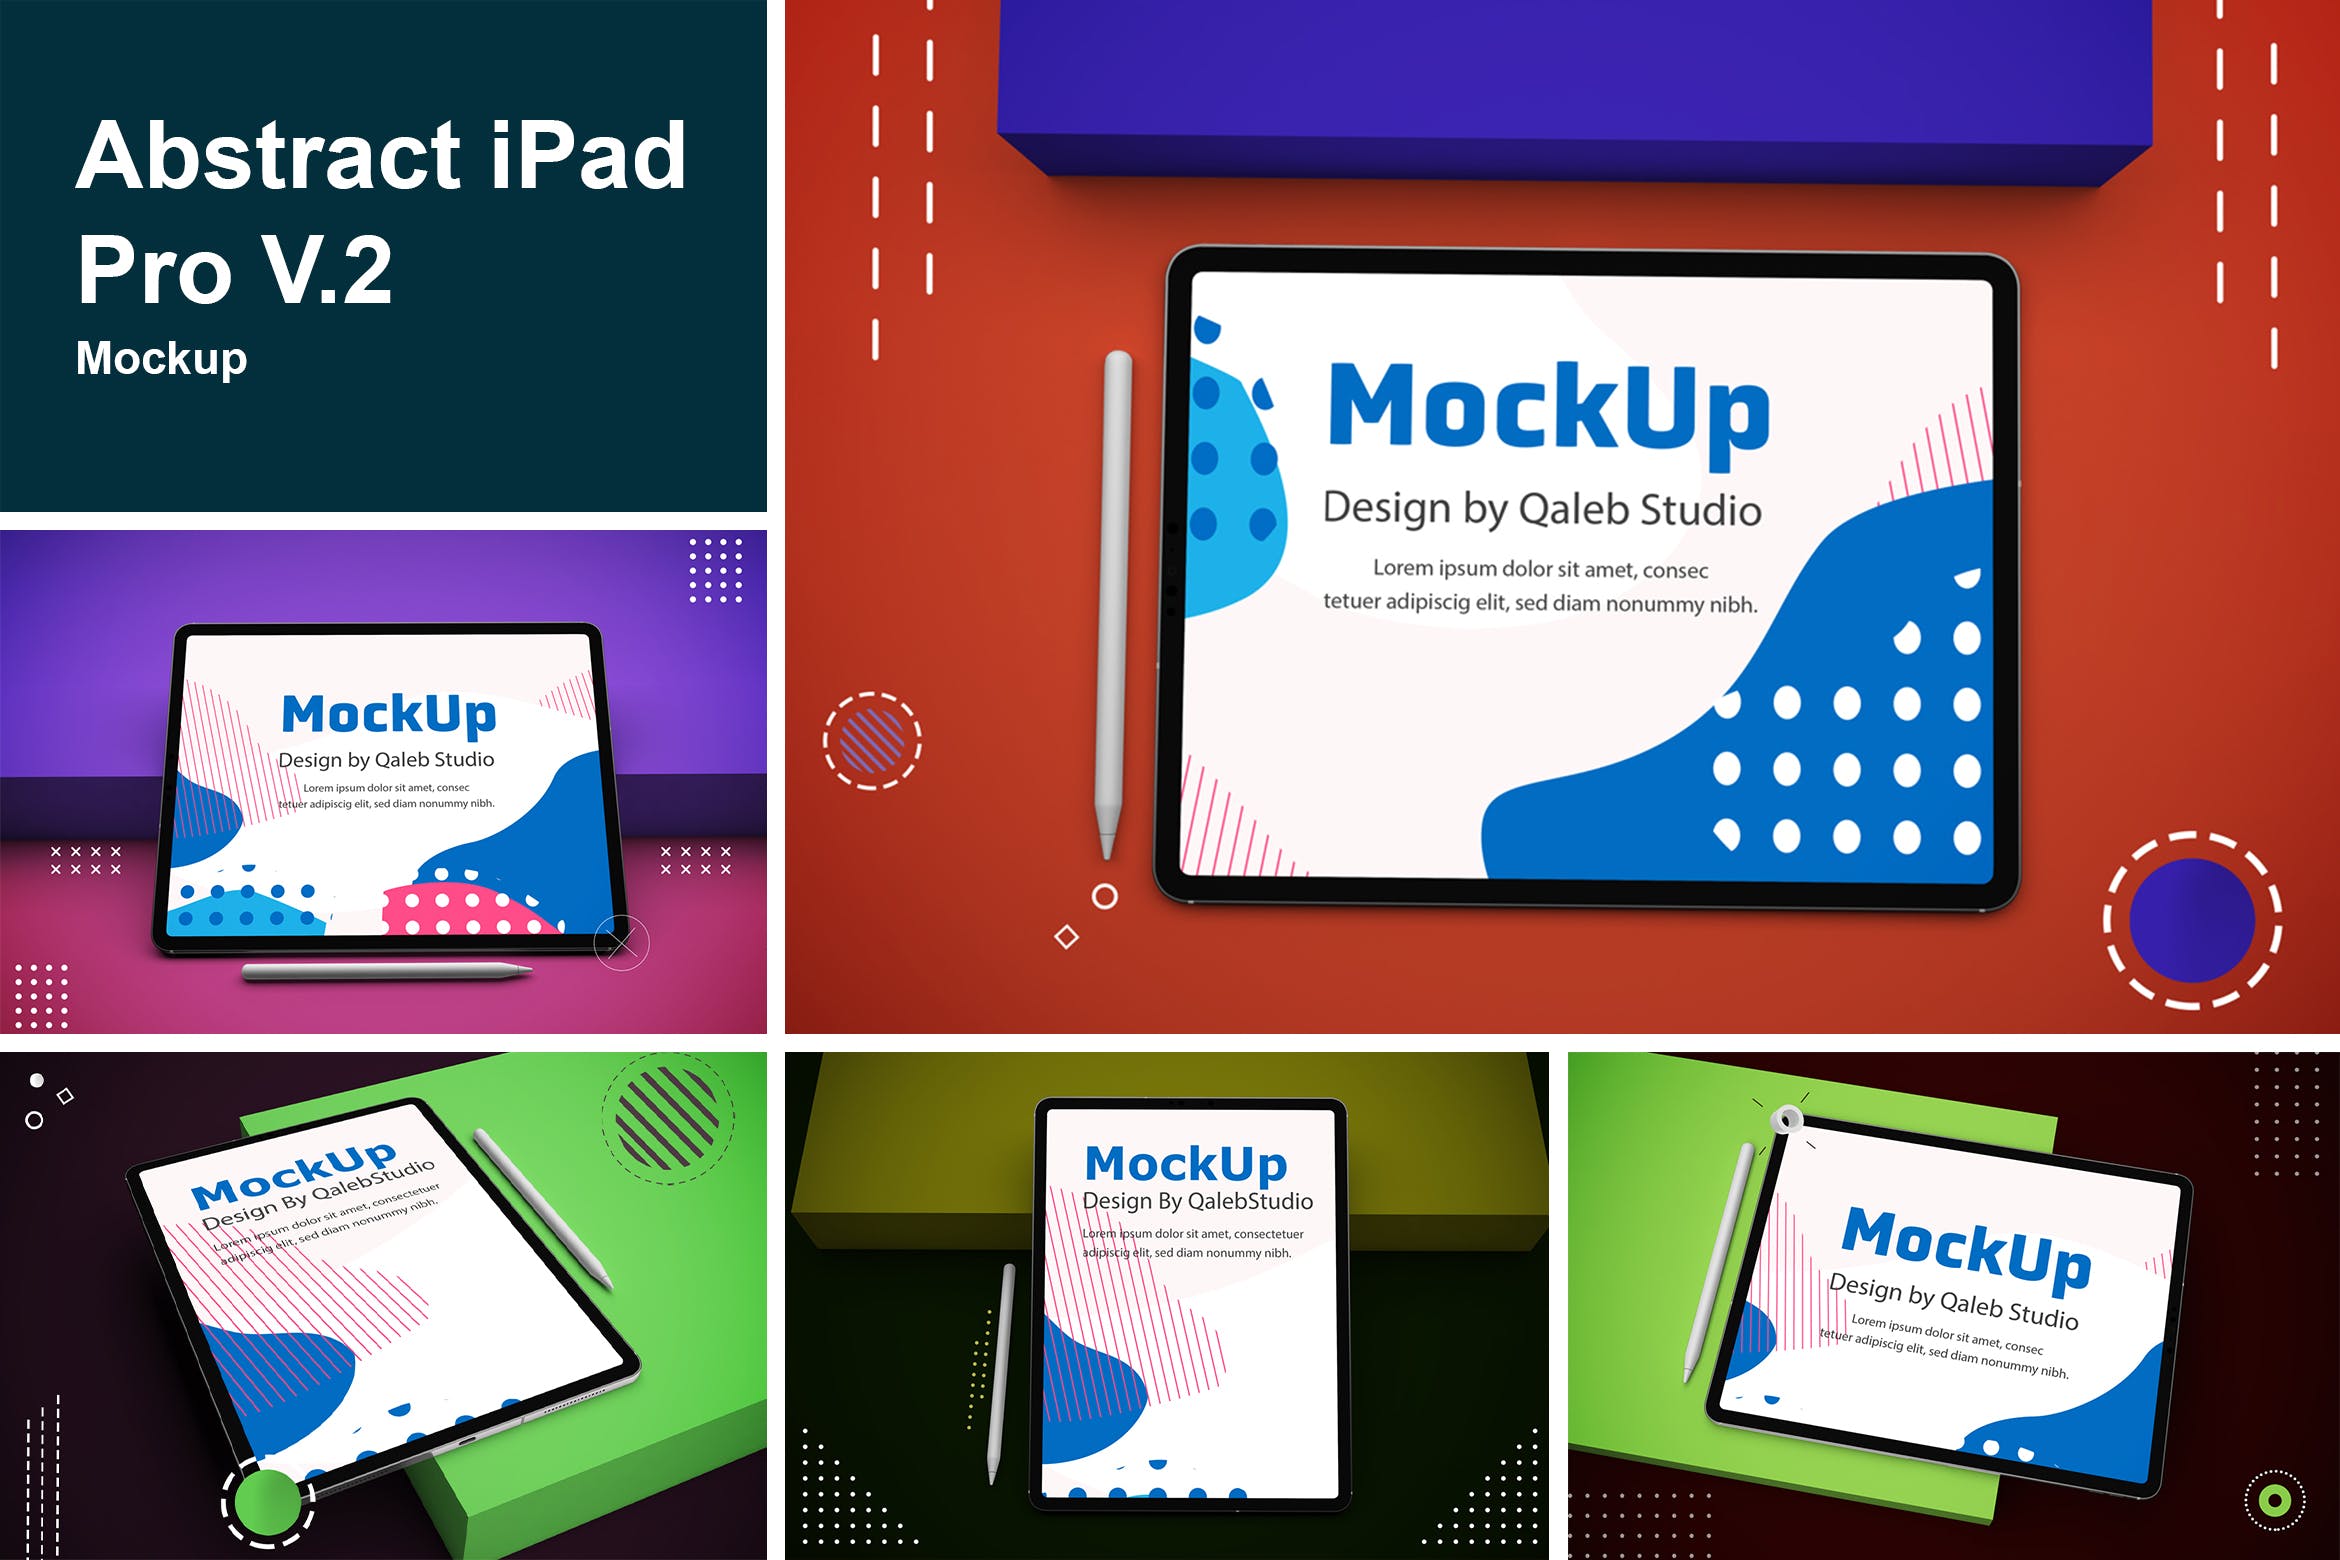 抽象设计风格iPad Pro平板电脑屏幕效果图非凡图库精选样机v2 Abstract iPad Pro V.2 Mockup插图